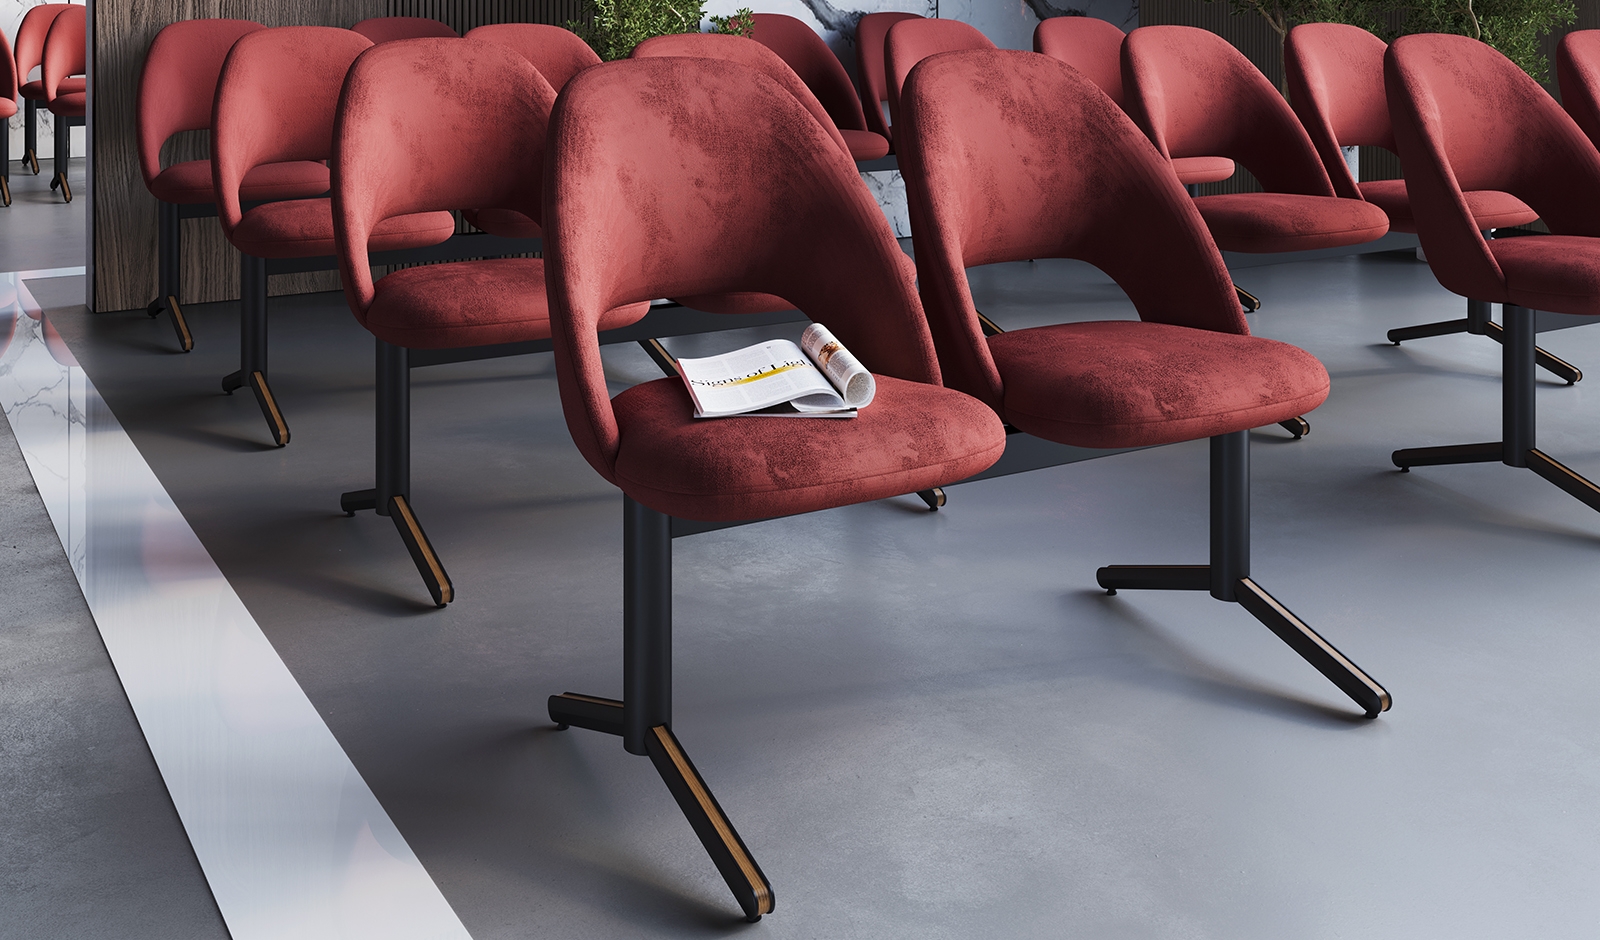 Alucast - Longarina Linx 2 Lugares - Bases Giratória Cadeiras/Poltronas em Alumínio